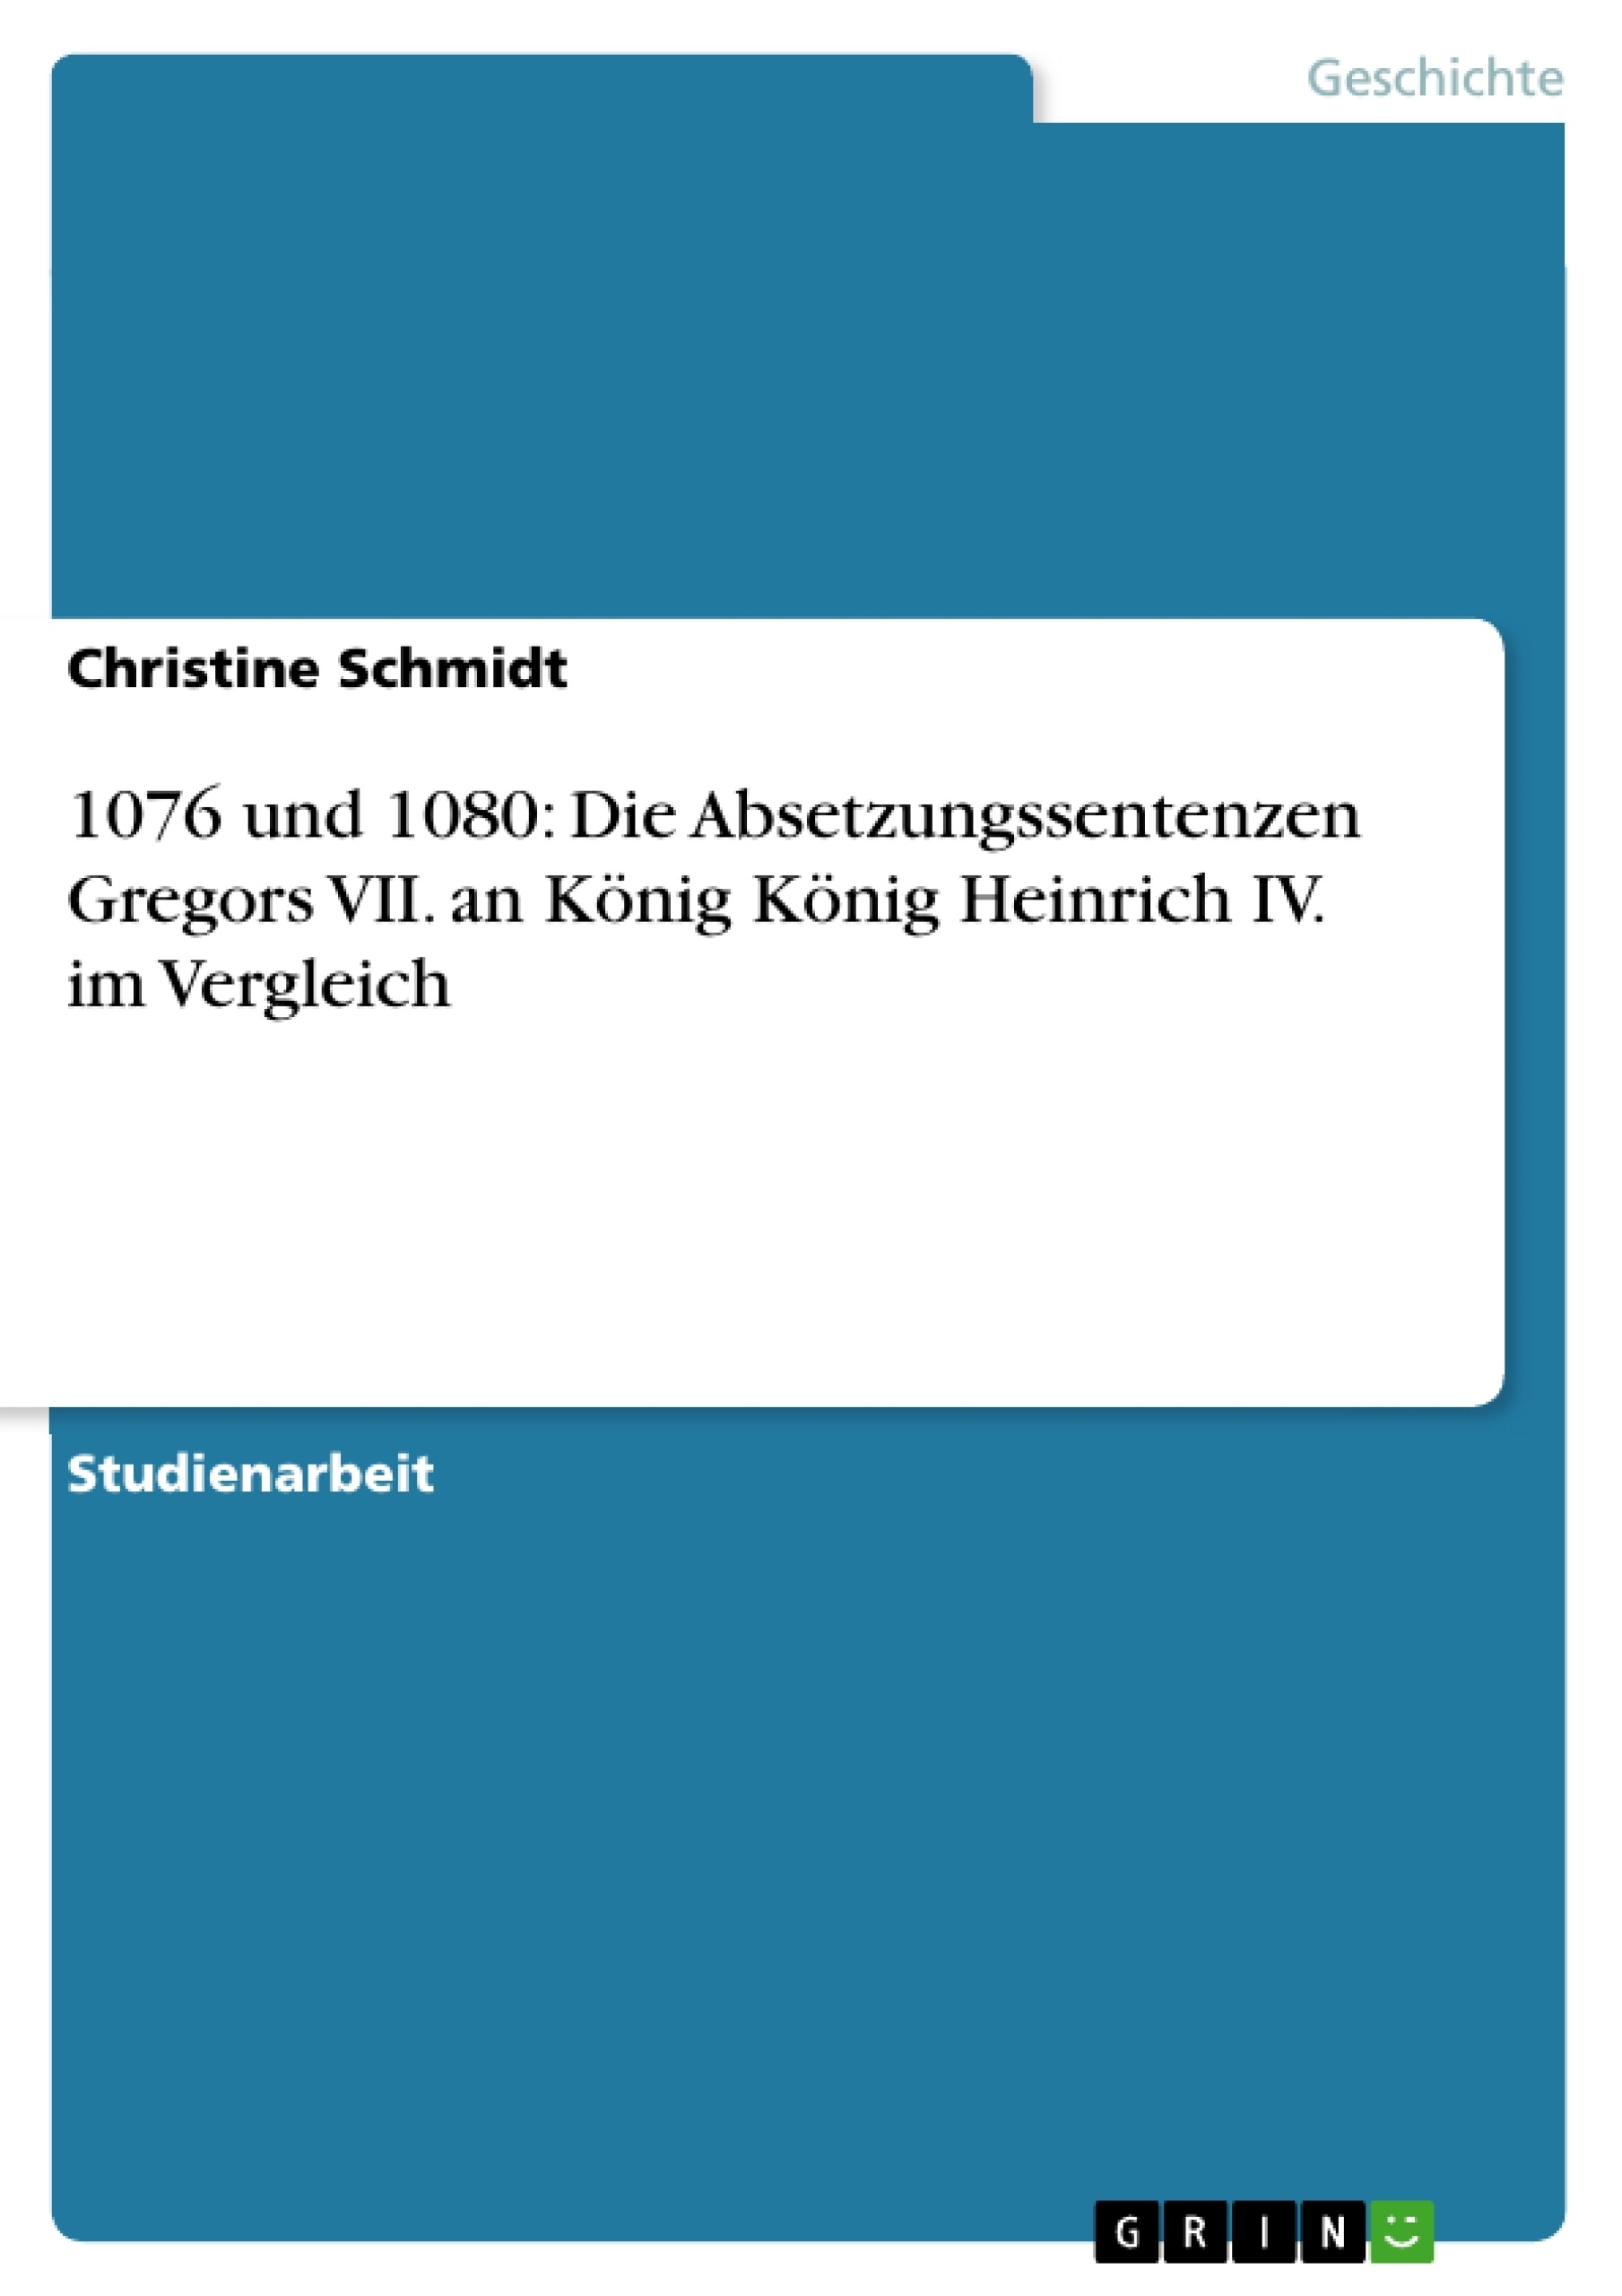 Título: 1076 und 1080: Die Absetzungssentenzen Gregors VII. an König König Heinrich IV. im Vergleich